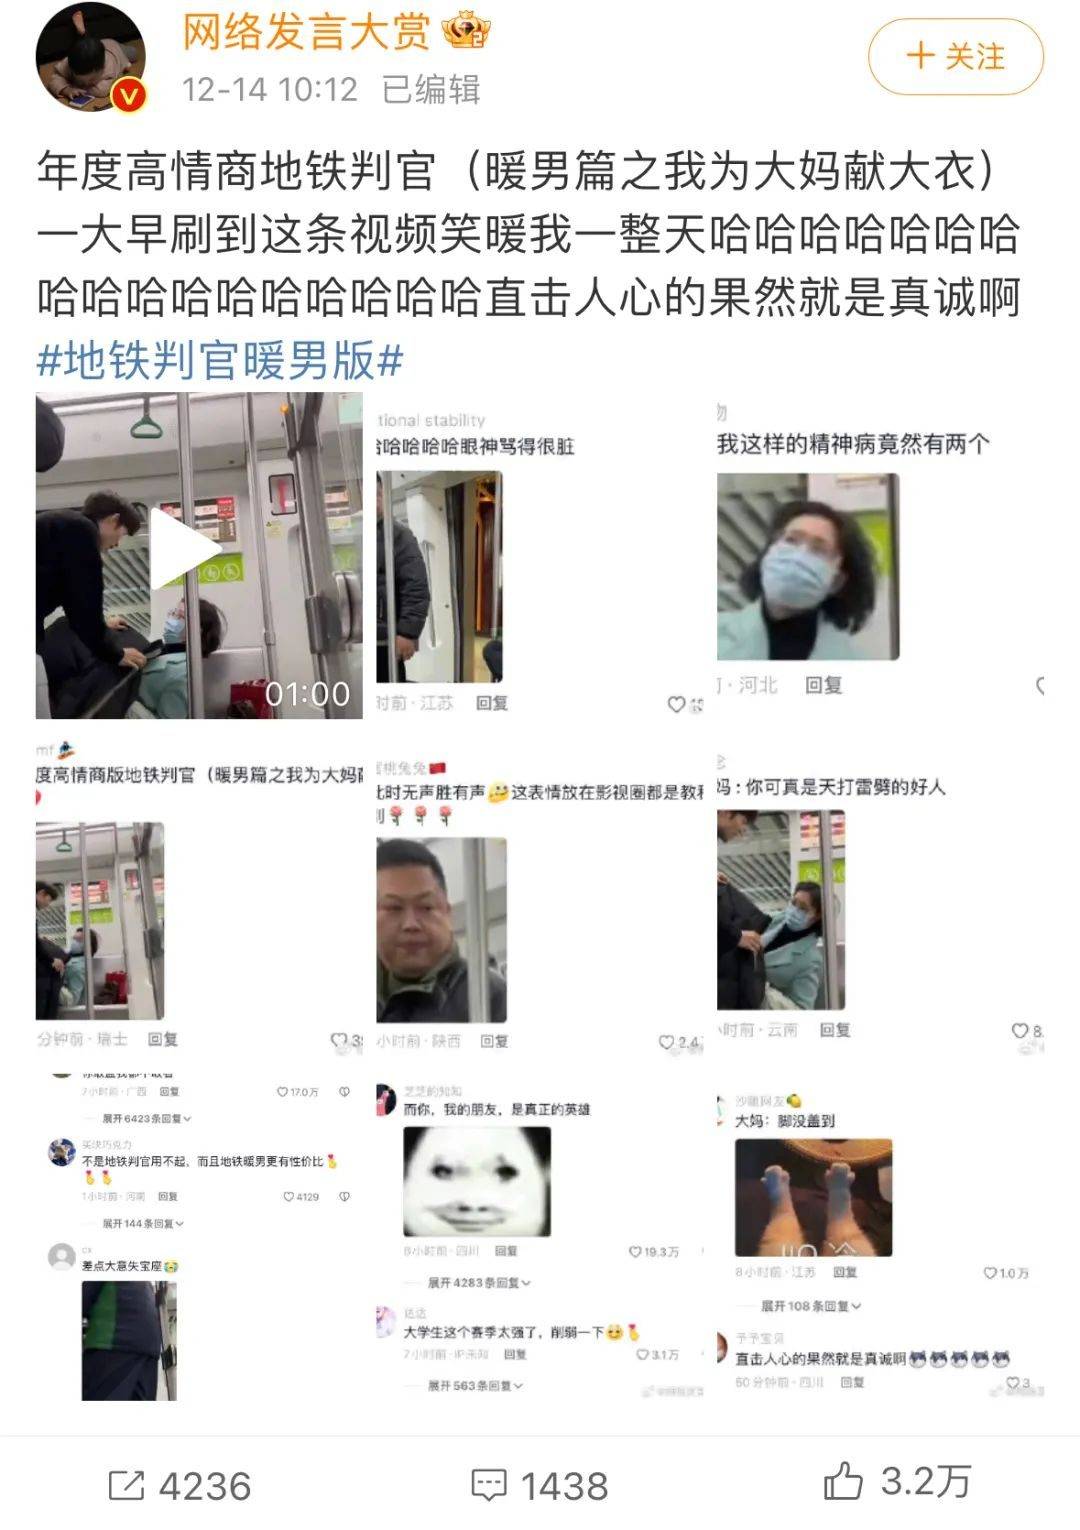 “南昌地铁上最疯狂一幕”被挂上热搜：中国年轻人大型发疯实录